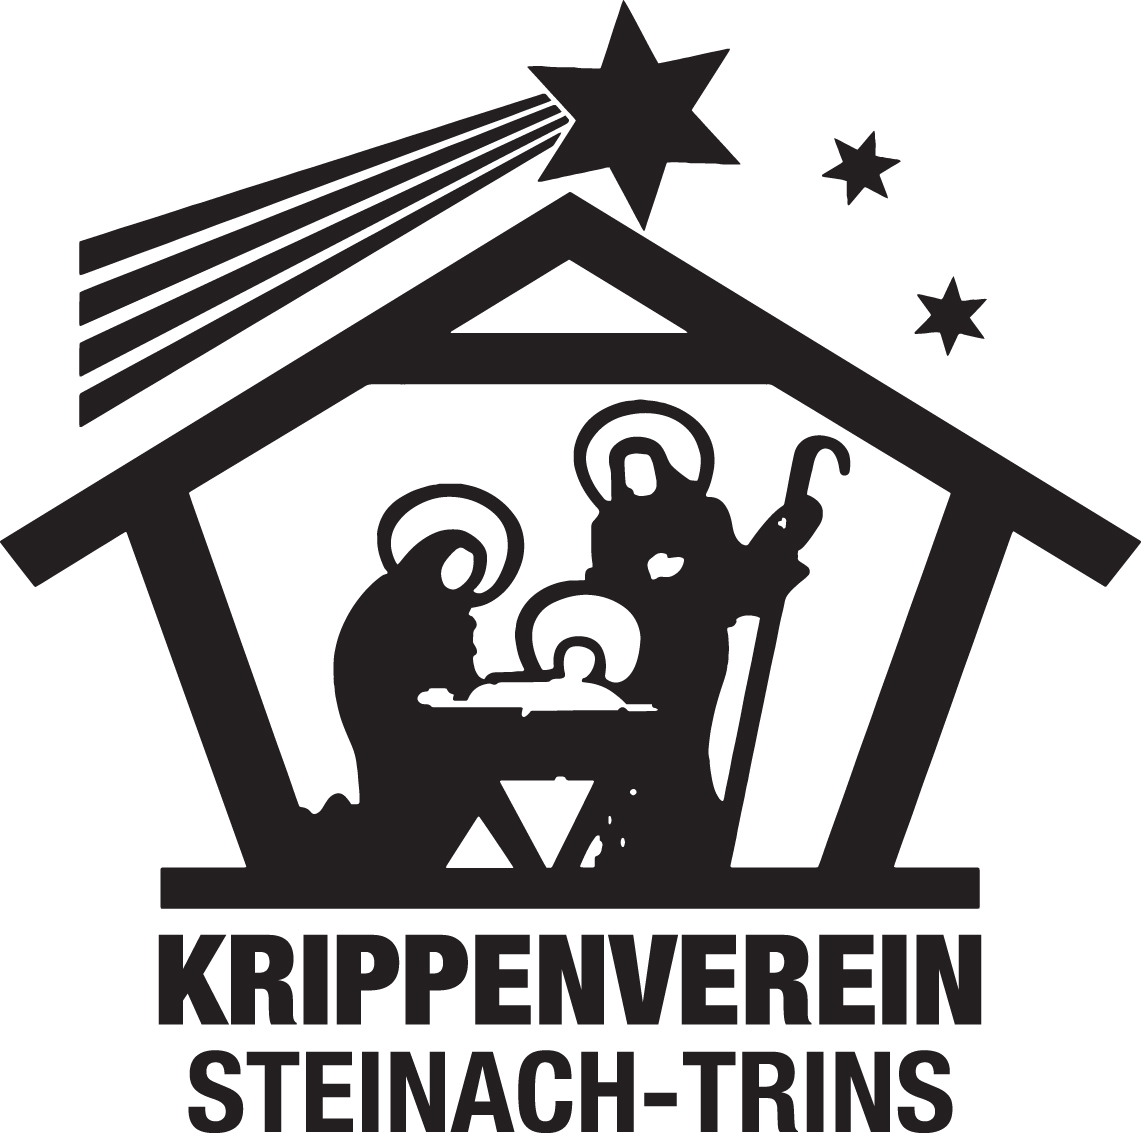 Krippenverein Steinach-Trins